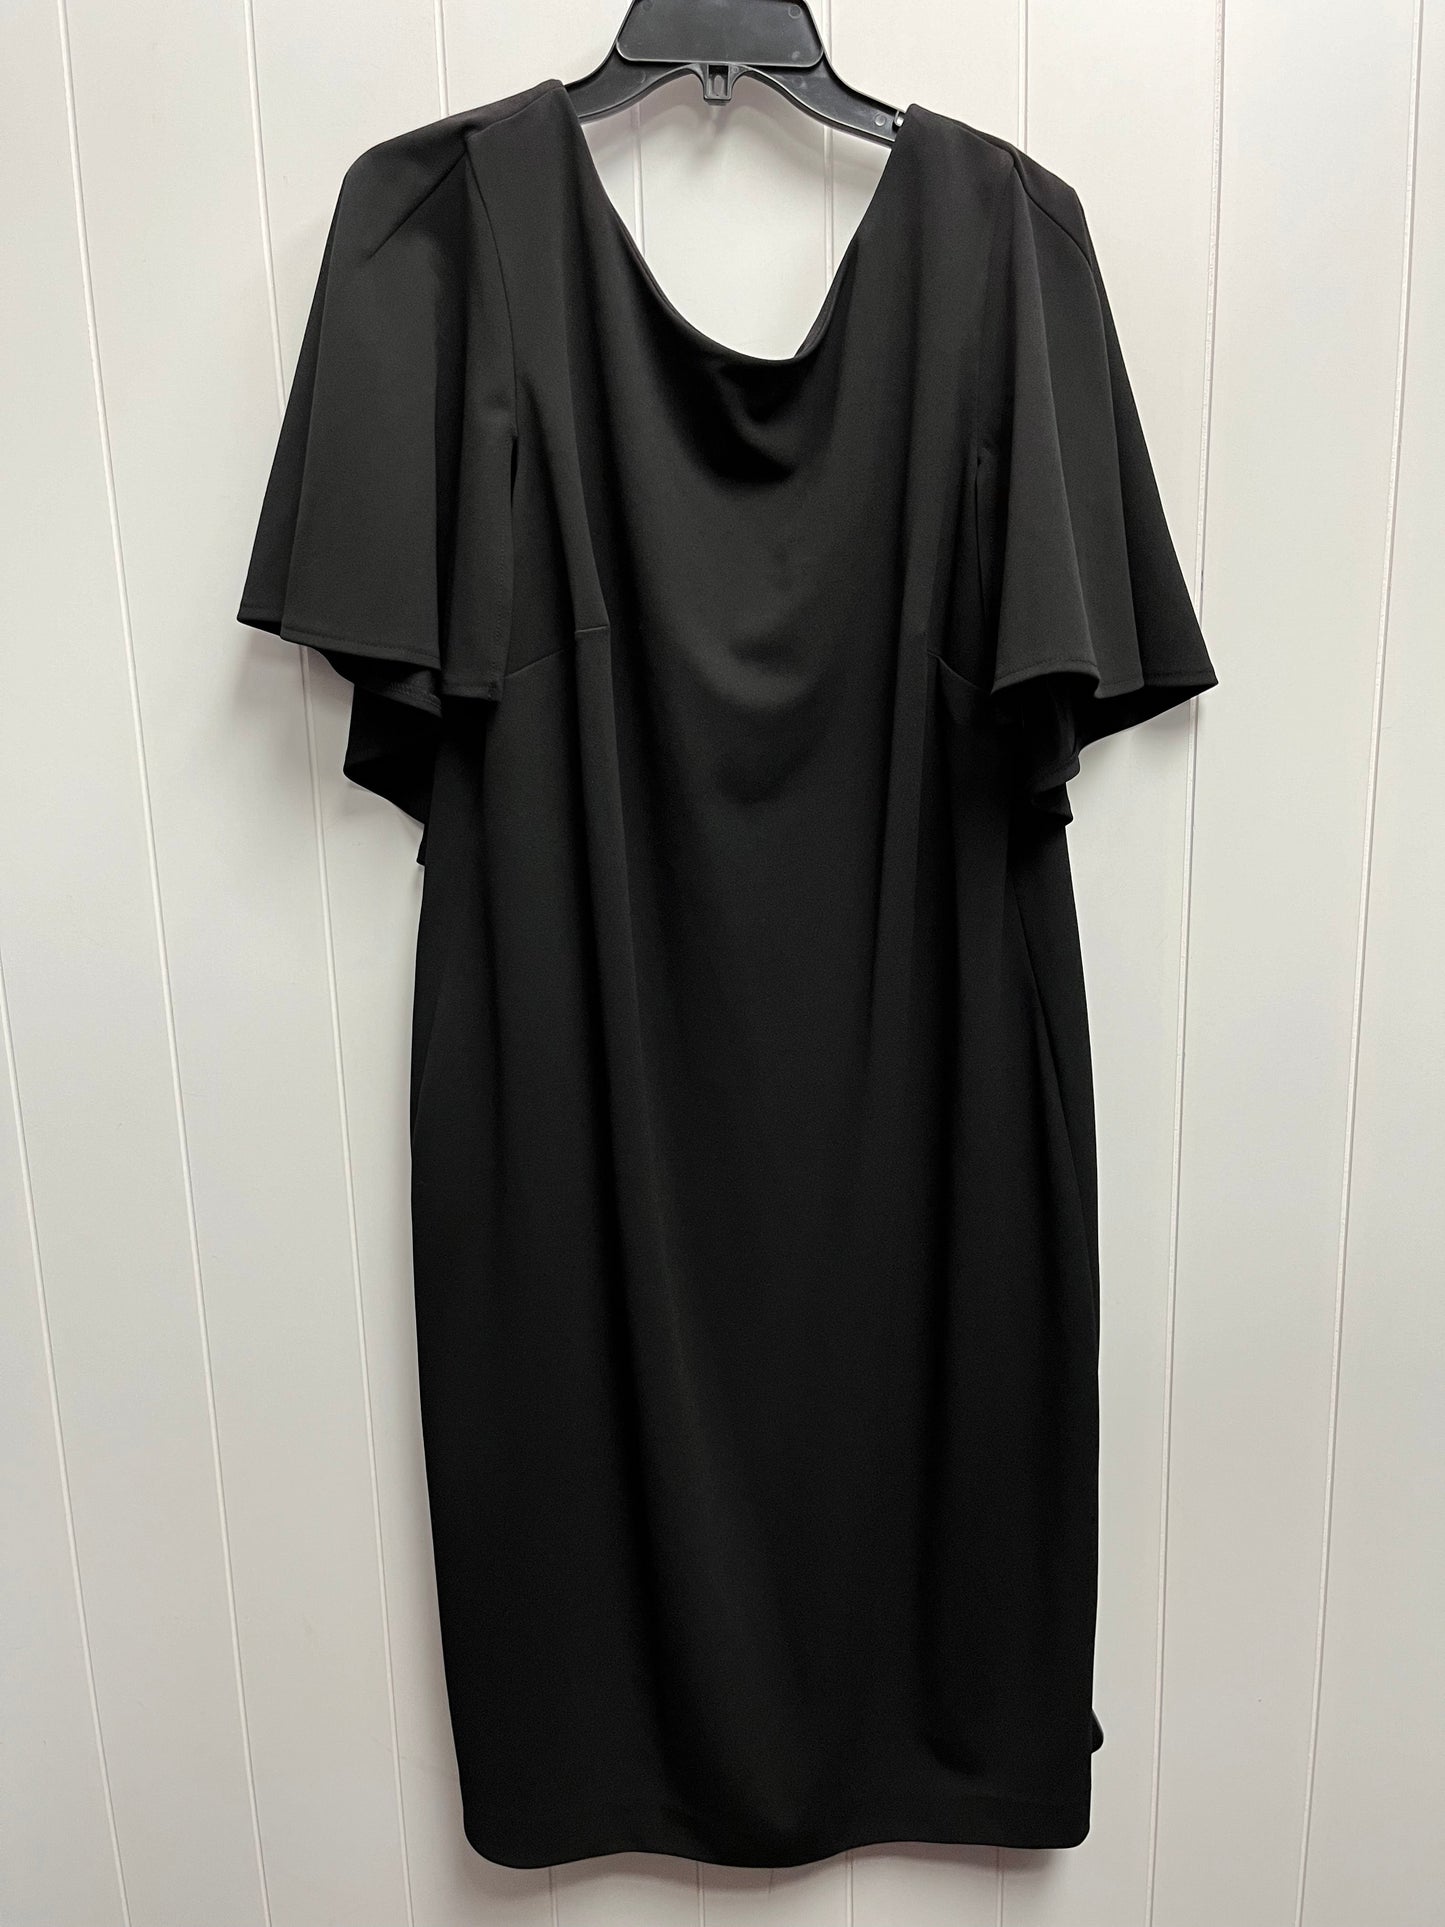 Black Dress Work Calvin Klein, Size 16